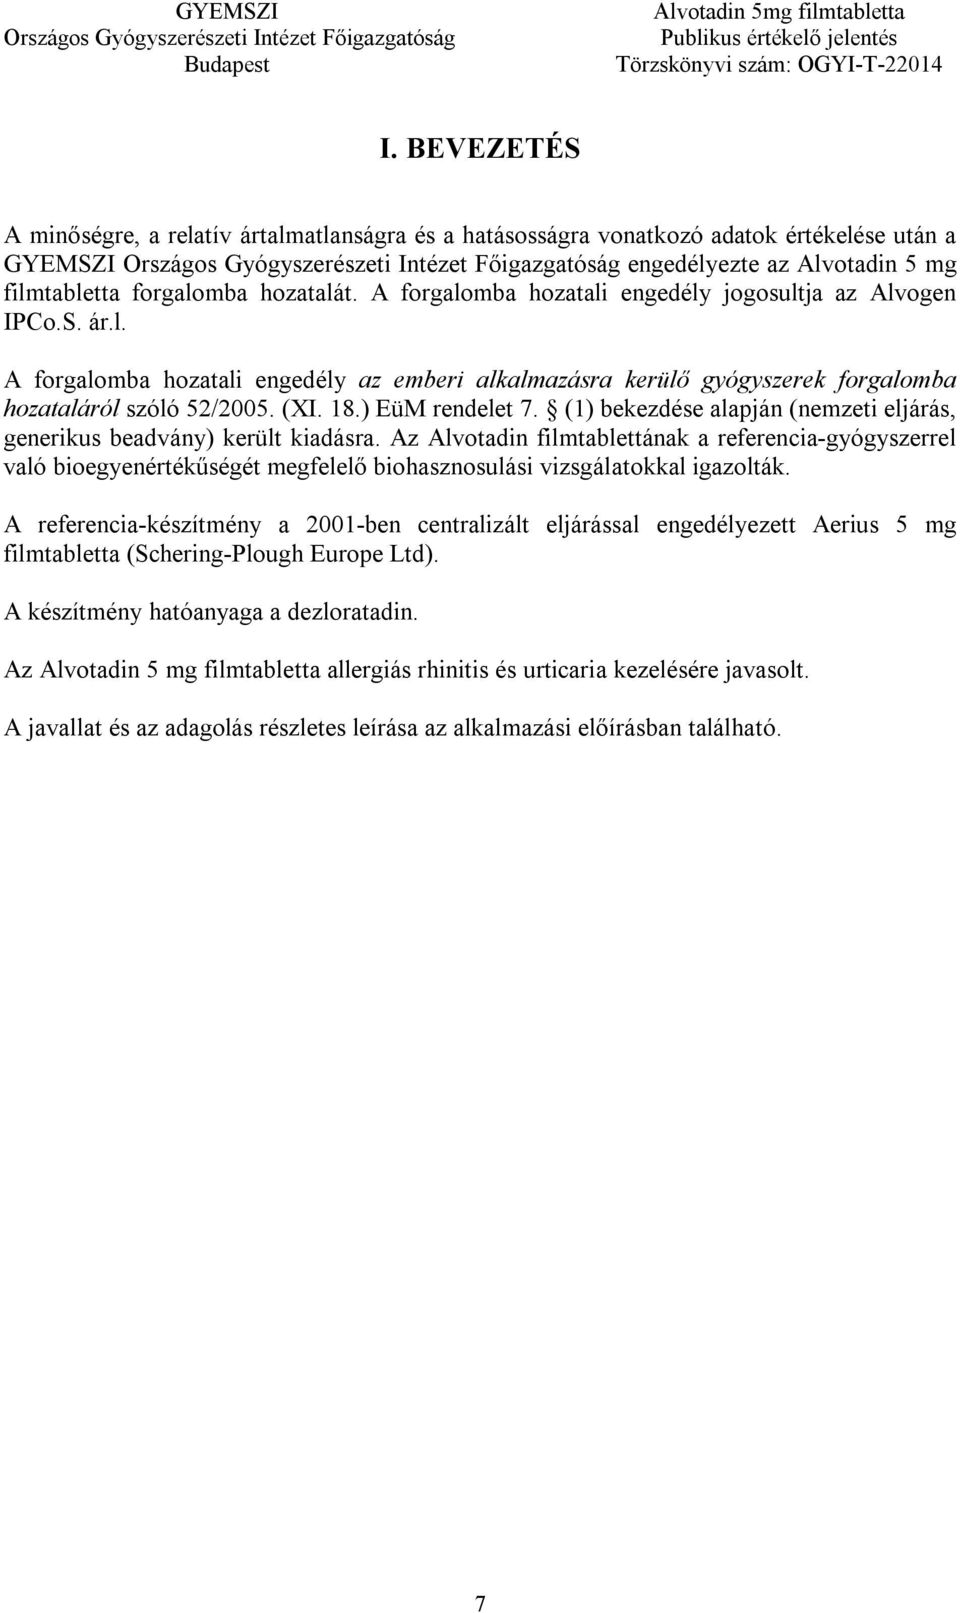 ) EüM rendelet 7. (1) bekezdése alapján (nemzeti eljárás, generikus beadvány) került kiadásra.